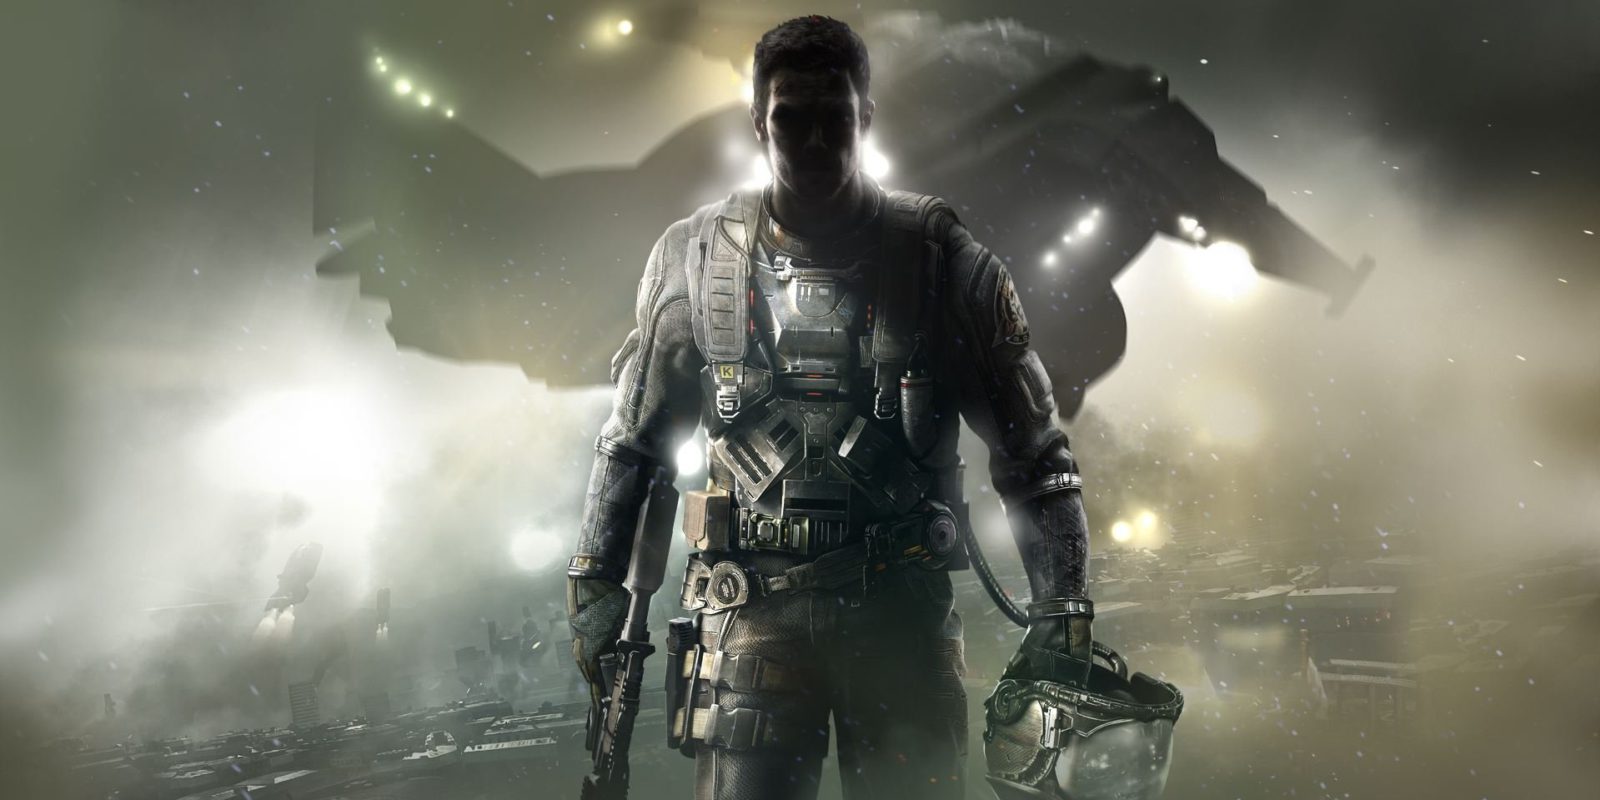 Juega gratis a 'Call of Duty: Infinite Warfare' este fin de semana en Xbox One